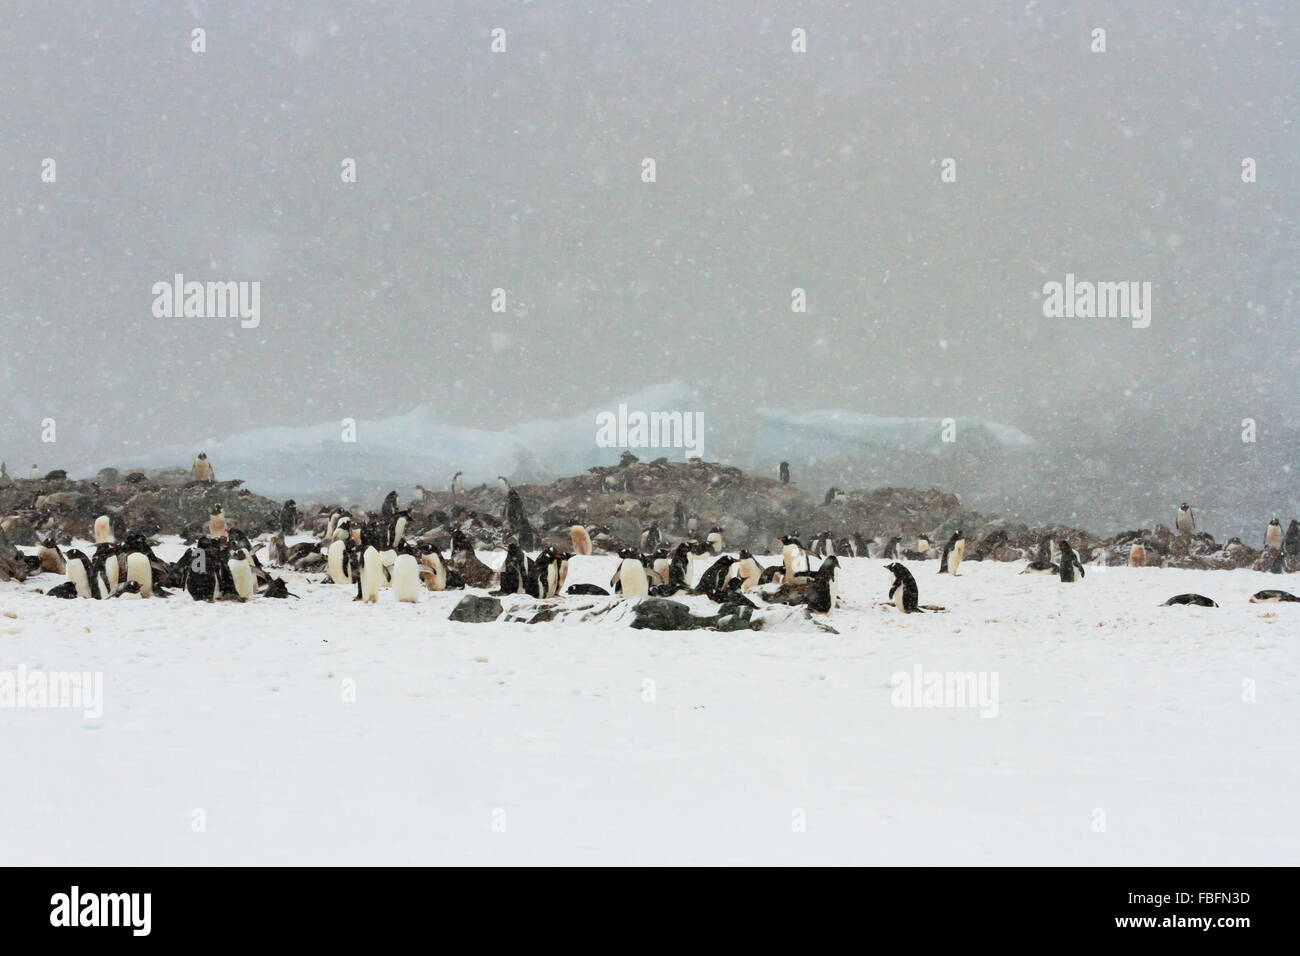 La nieve caída en la colonia de pingüinos gentoo en la Antártica, Isla Ronge. Foto de stock